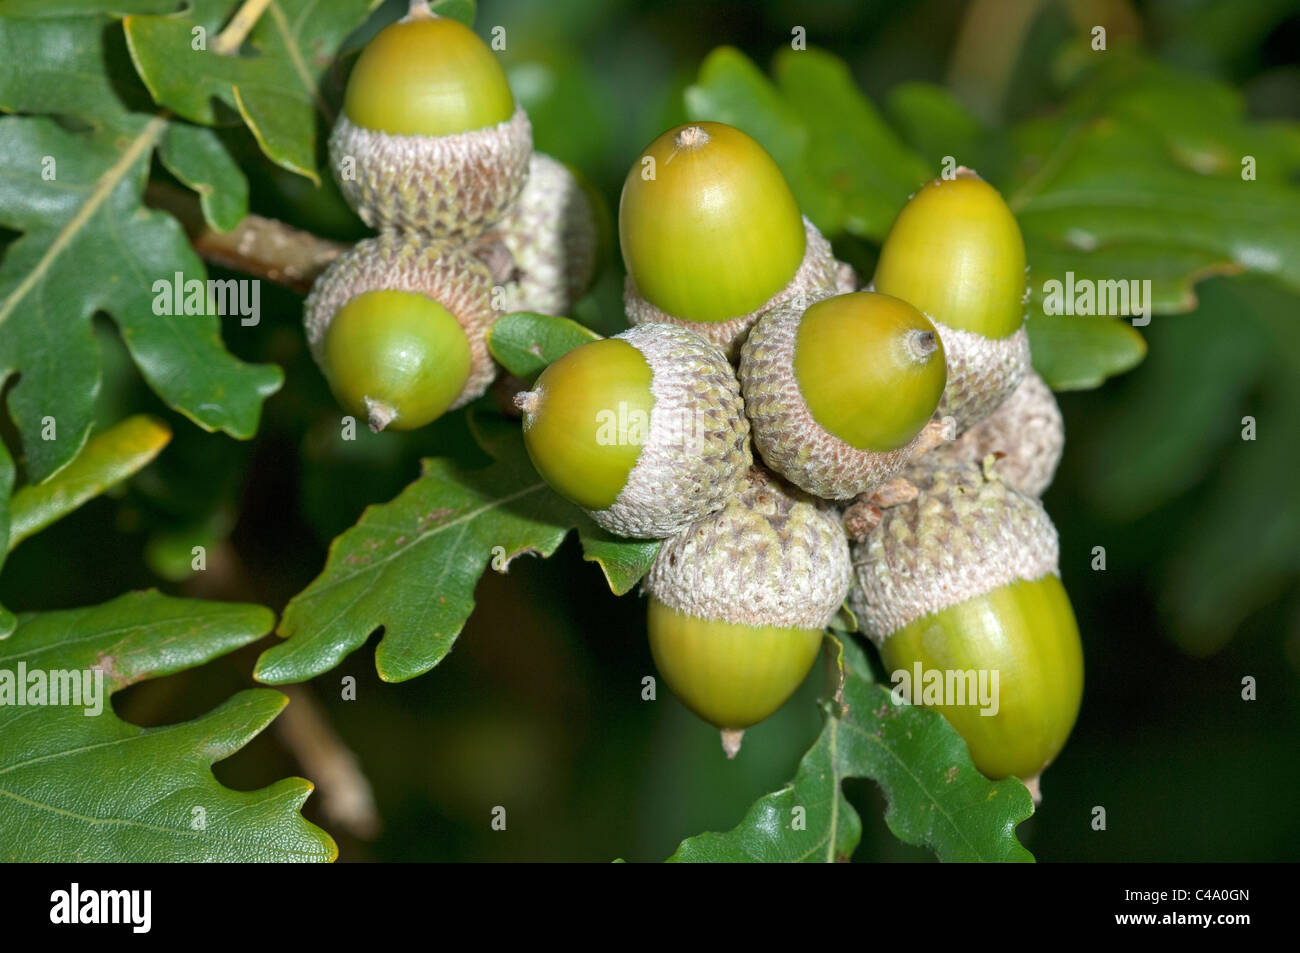 Sessile Oak, Durmast Oak (Quercus petraea, Quercus sessilis). Unripe acorns. Stock Photo